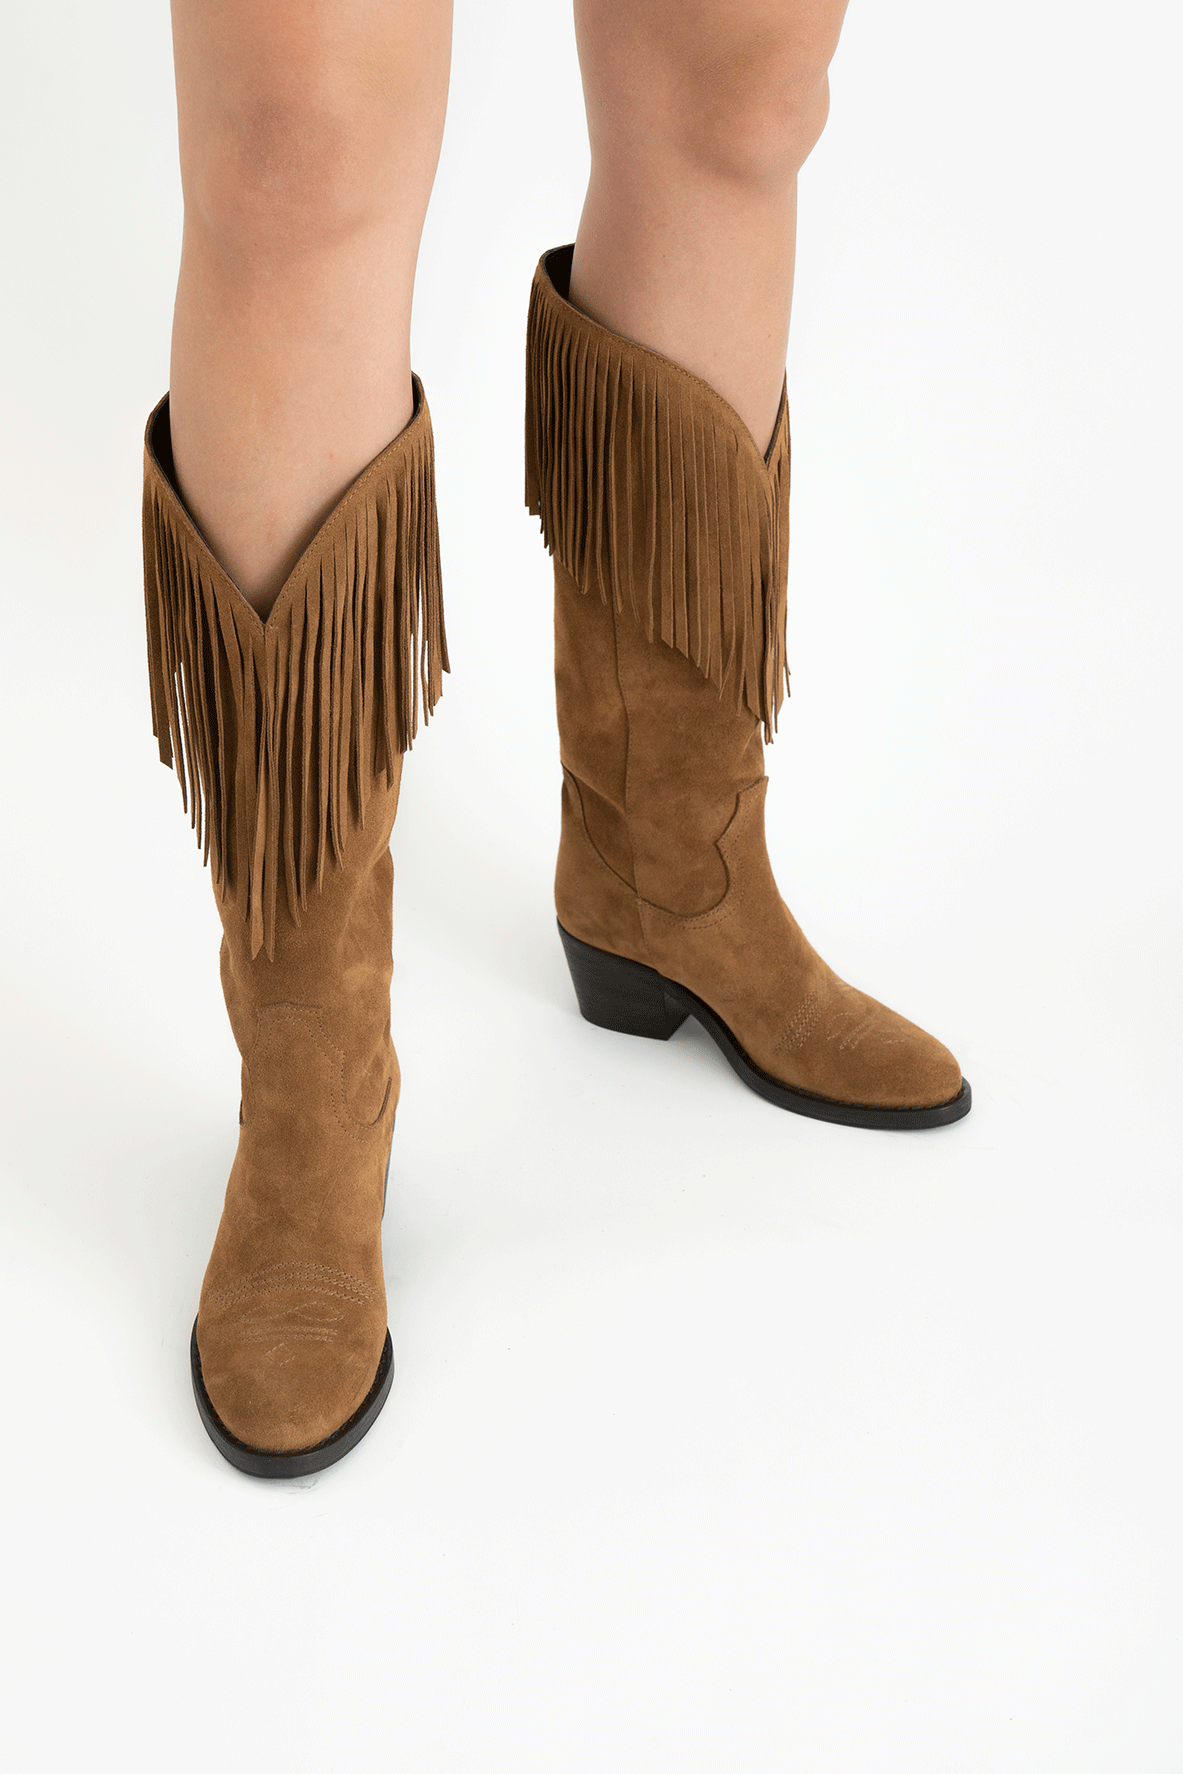 Wynonna cowboy støvler, brun ruskind